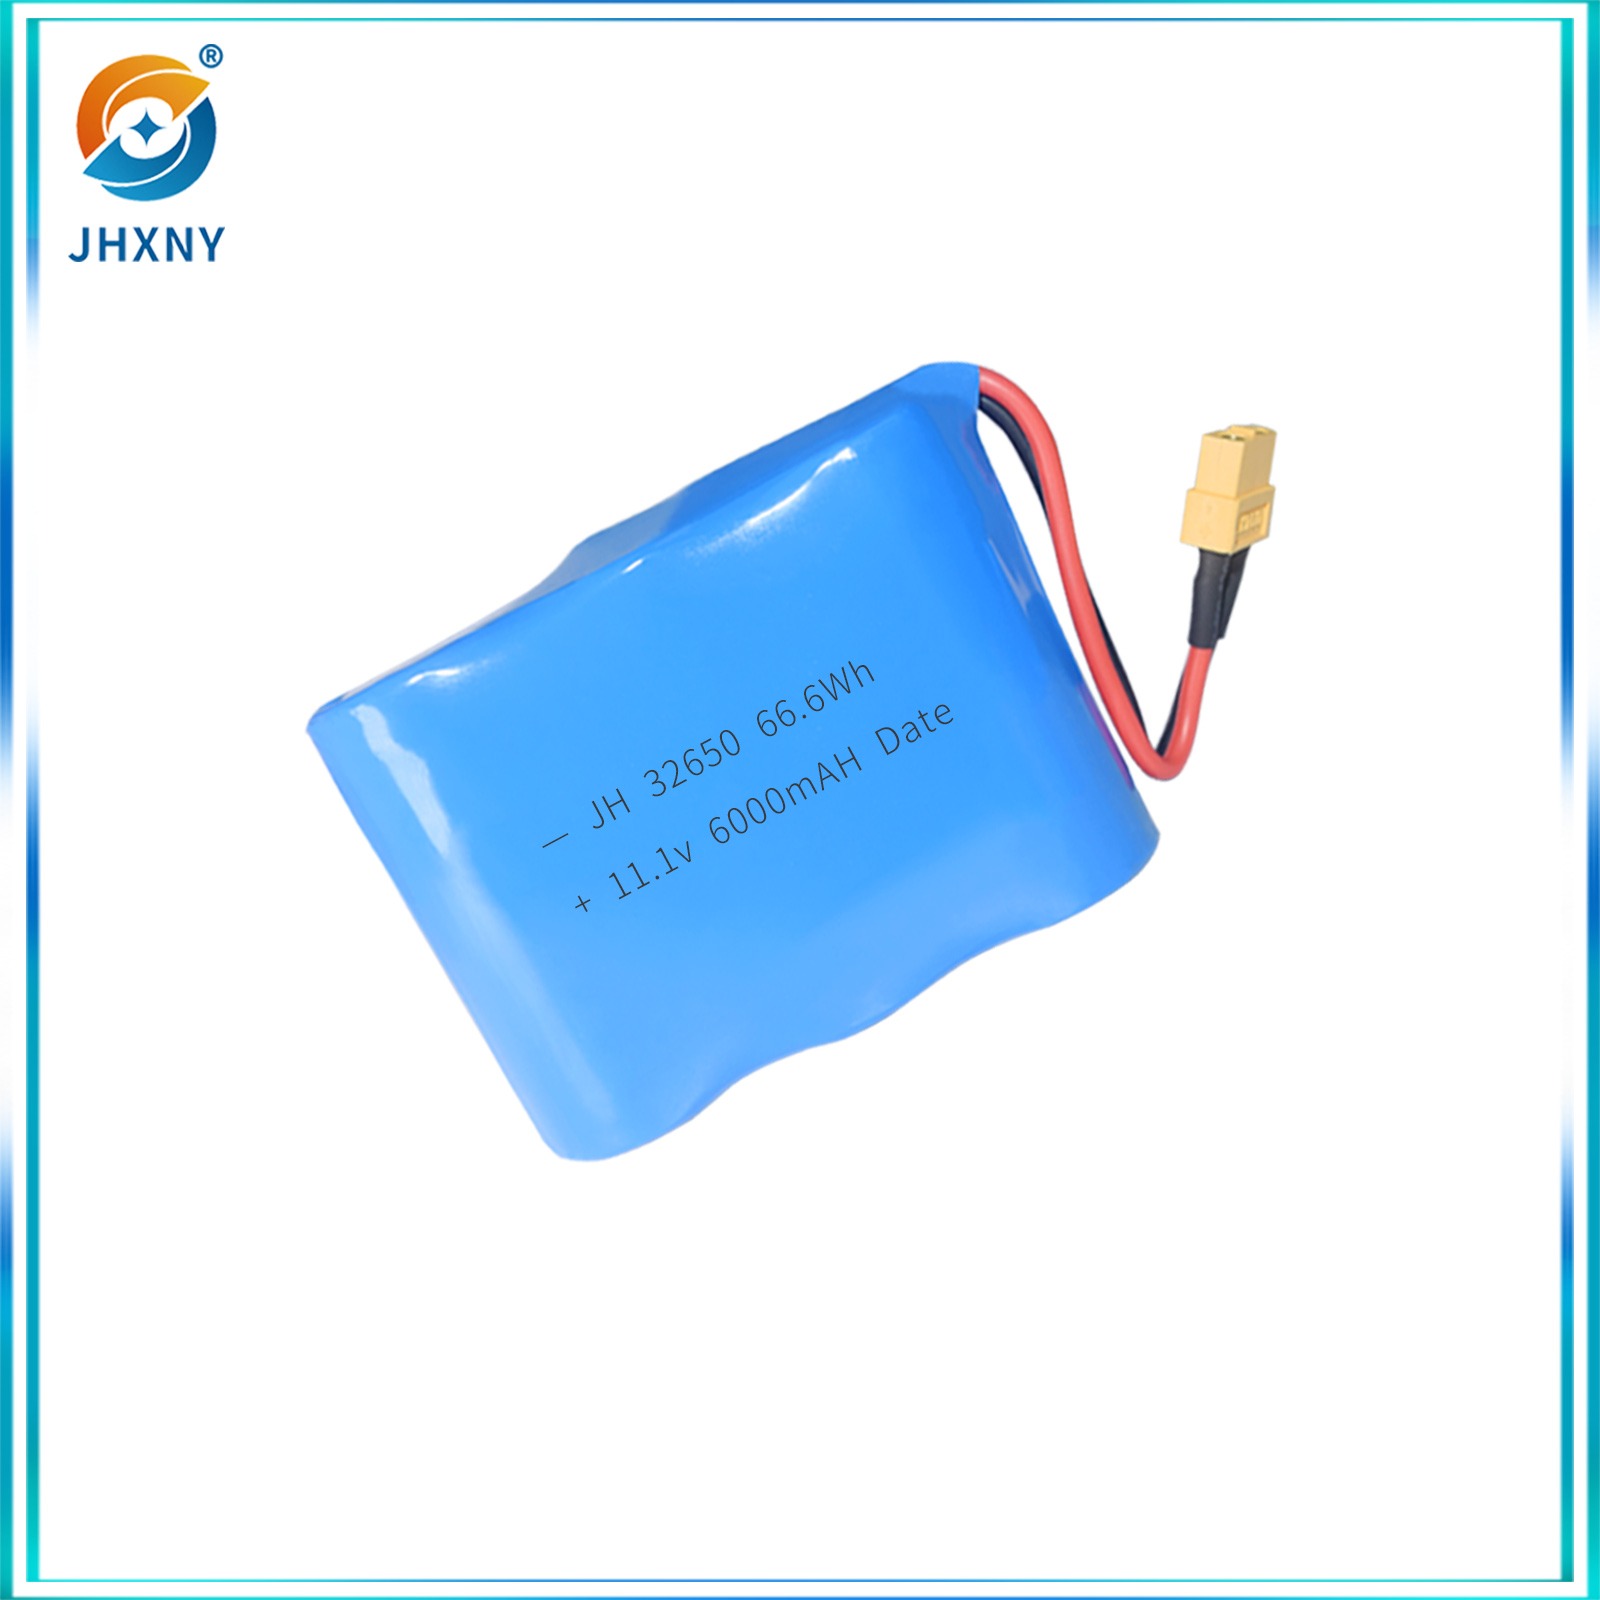 مضخة مضخة مضخة مضخة تعقيم كهربائية لجهاز اختبار بطاريات الليثيوم الأسطواني JH326511.1 V6000MAH.